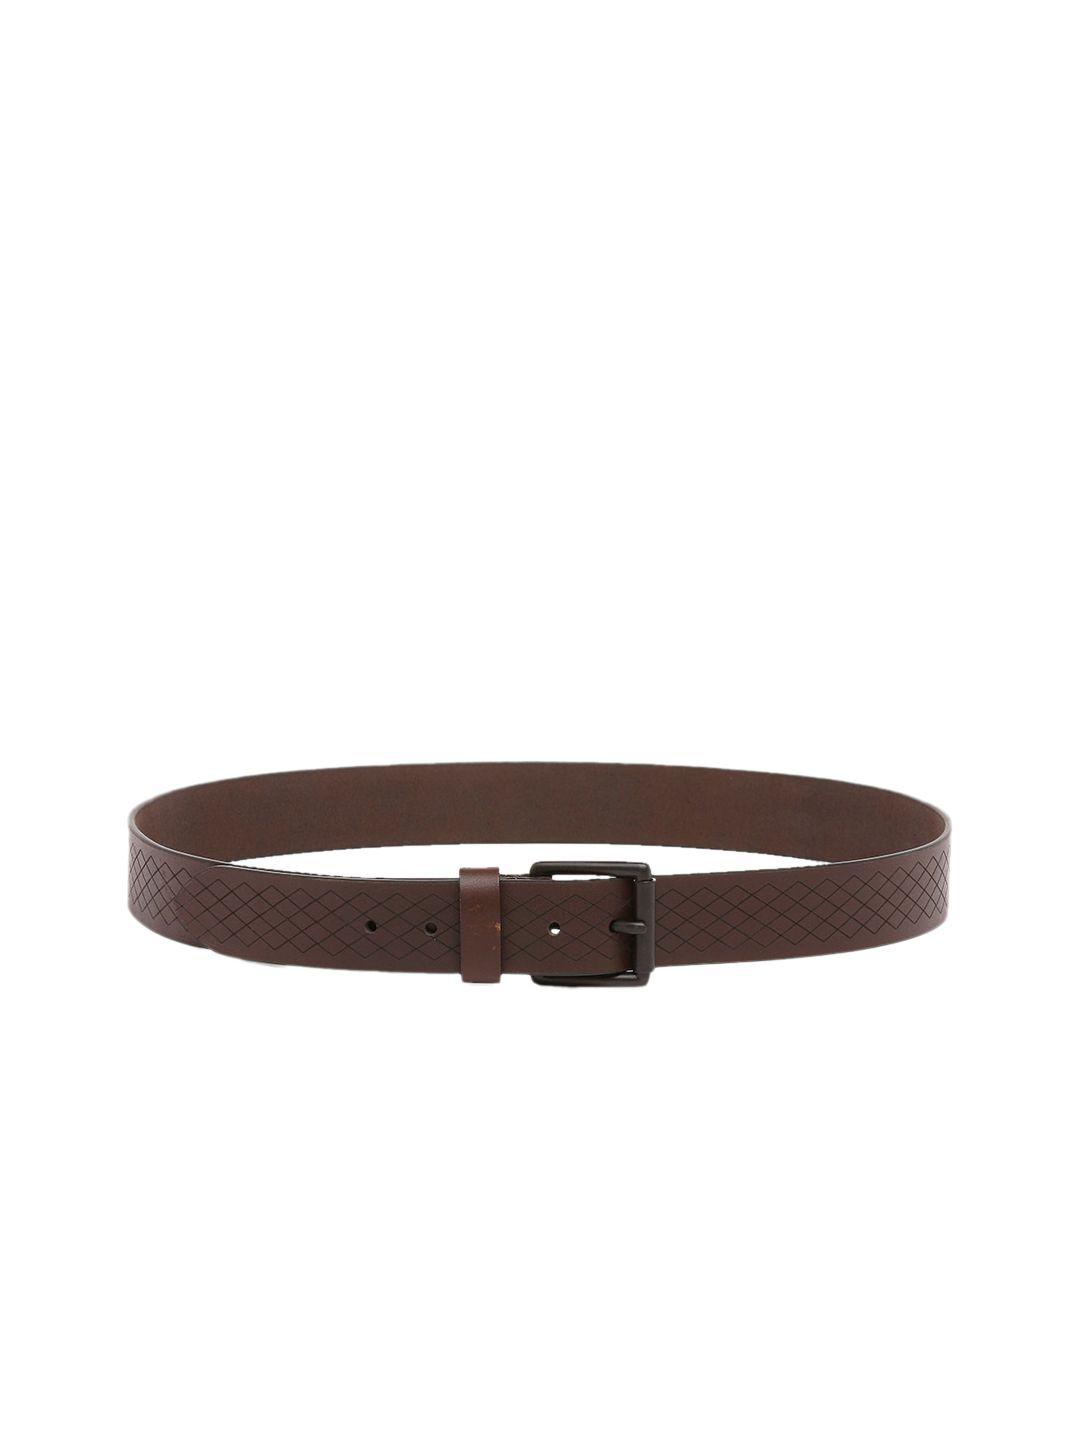 spykar-men-brown-textured-leather-belt